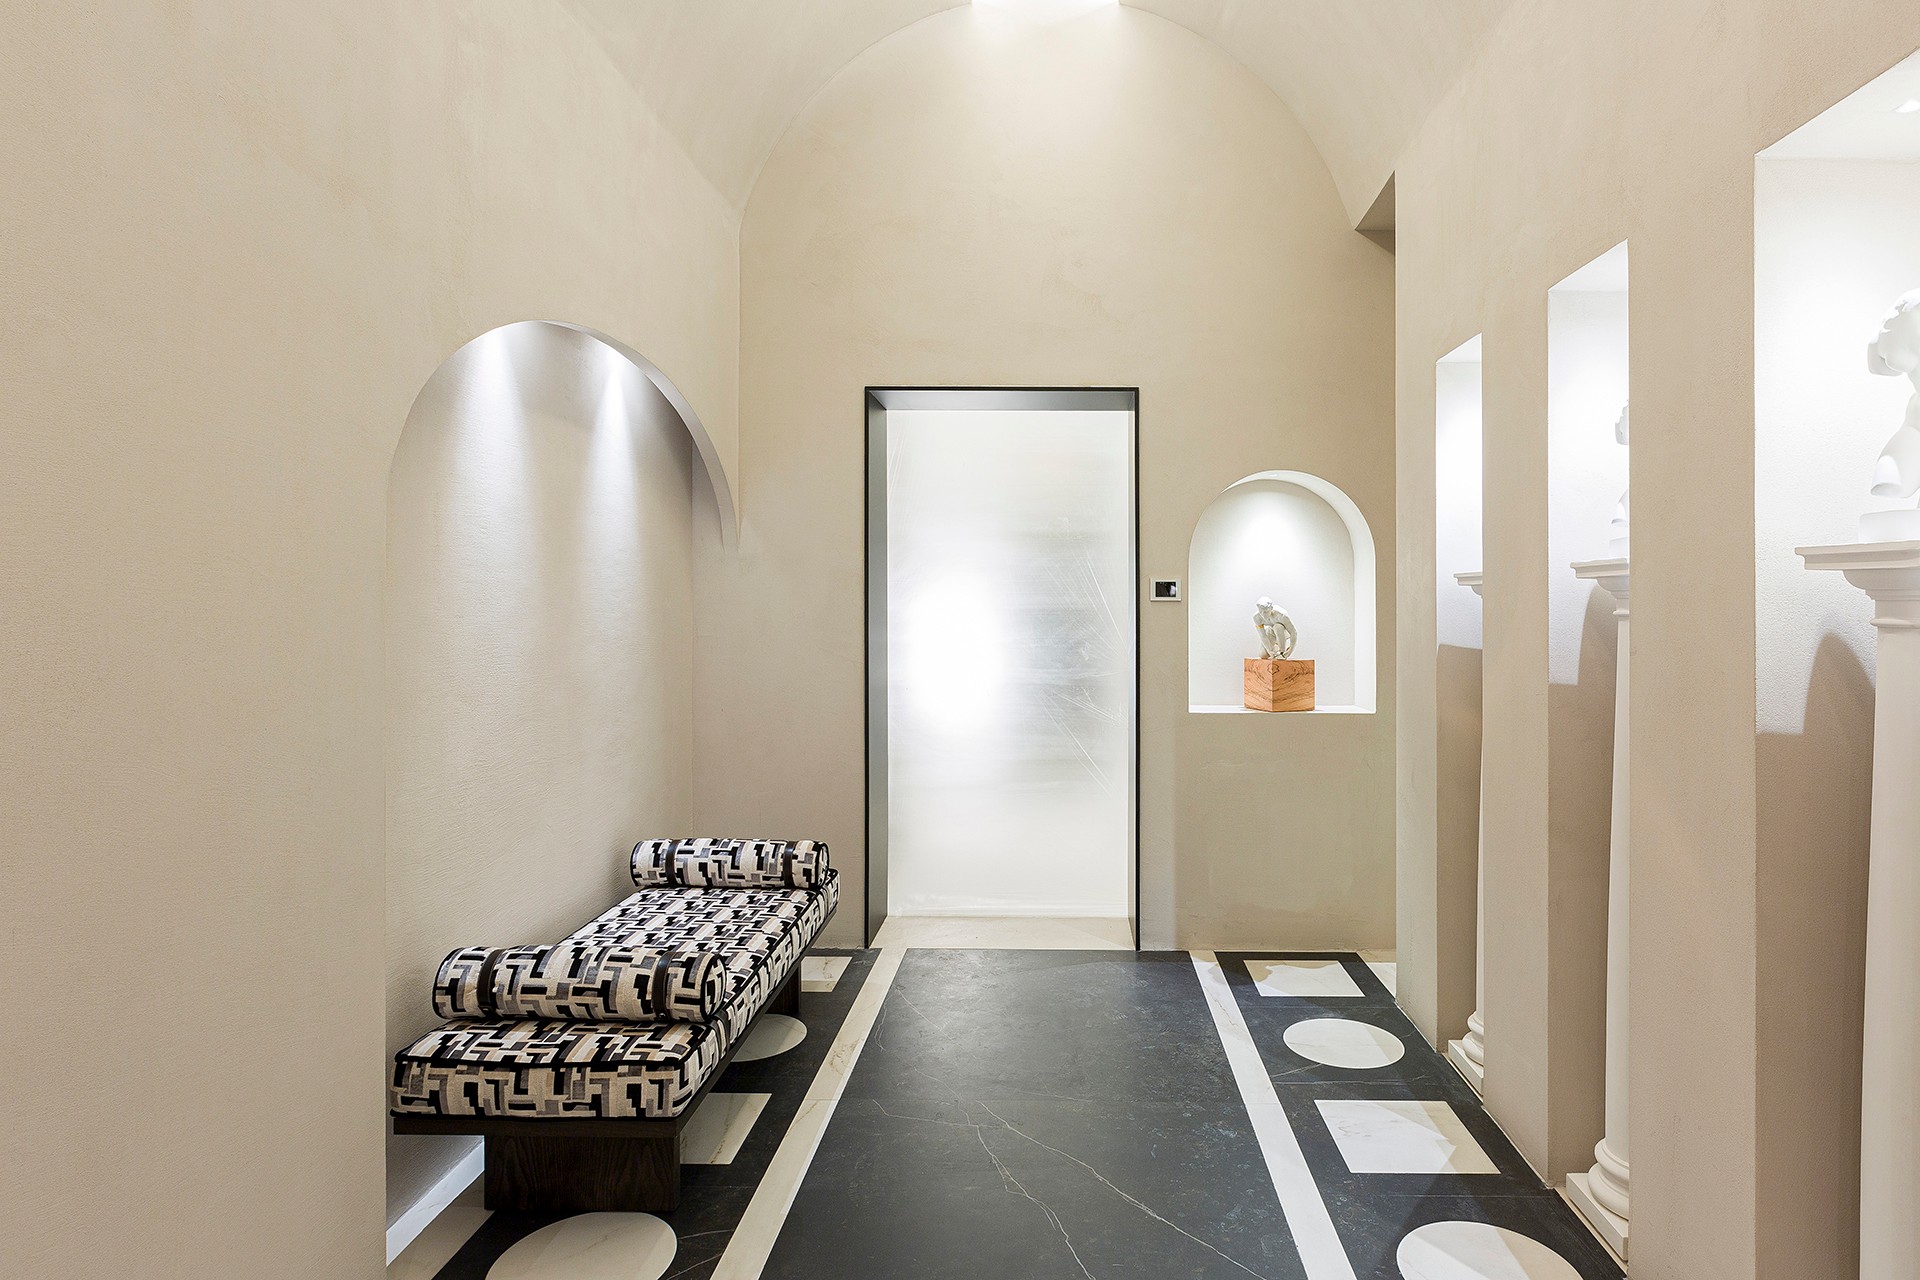 Image of 56. casa decor 2022 espacio somos2studio aseos uso publico bajas 14 1 in A contemporary public toilet design inspired by Roman public baths - Cosentino